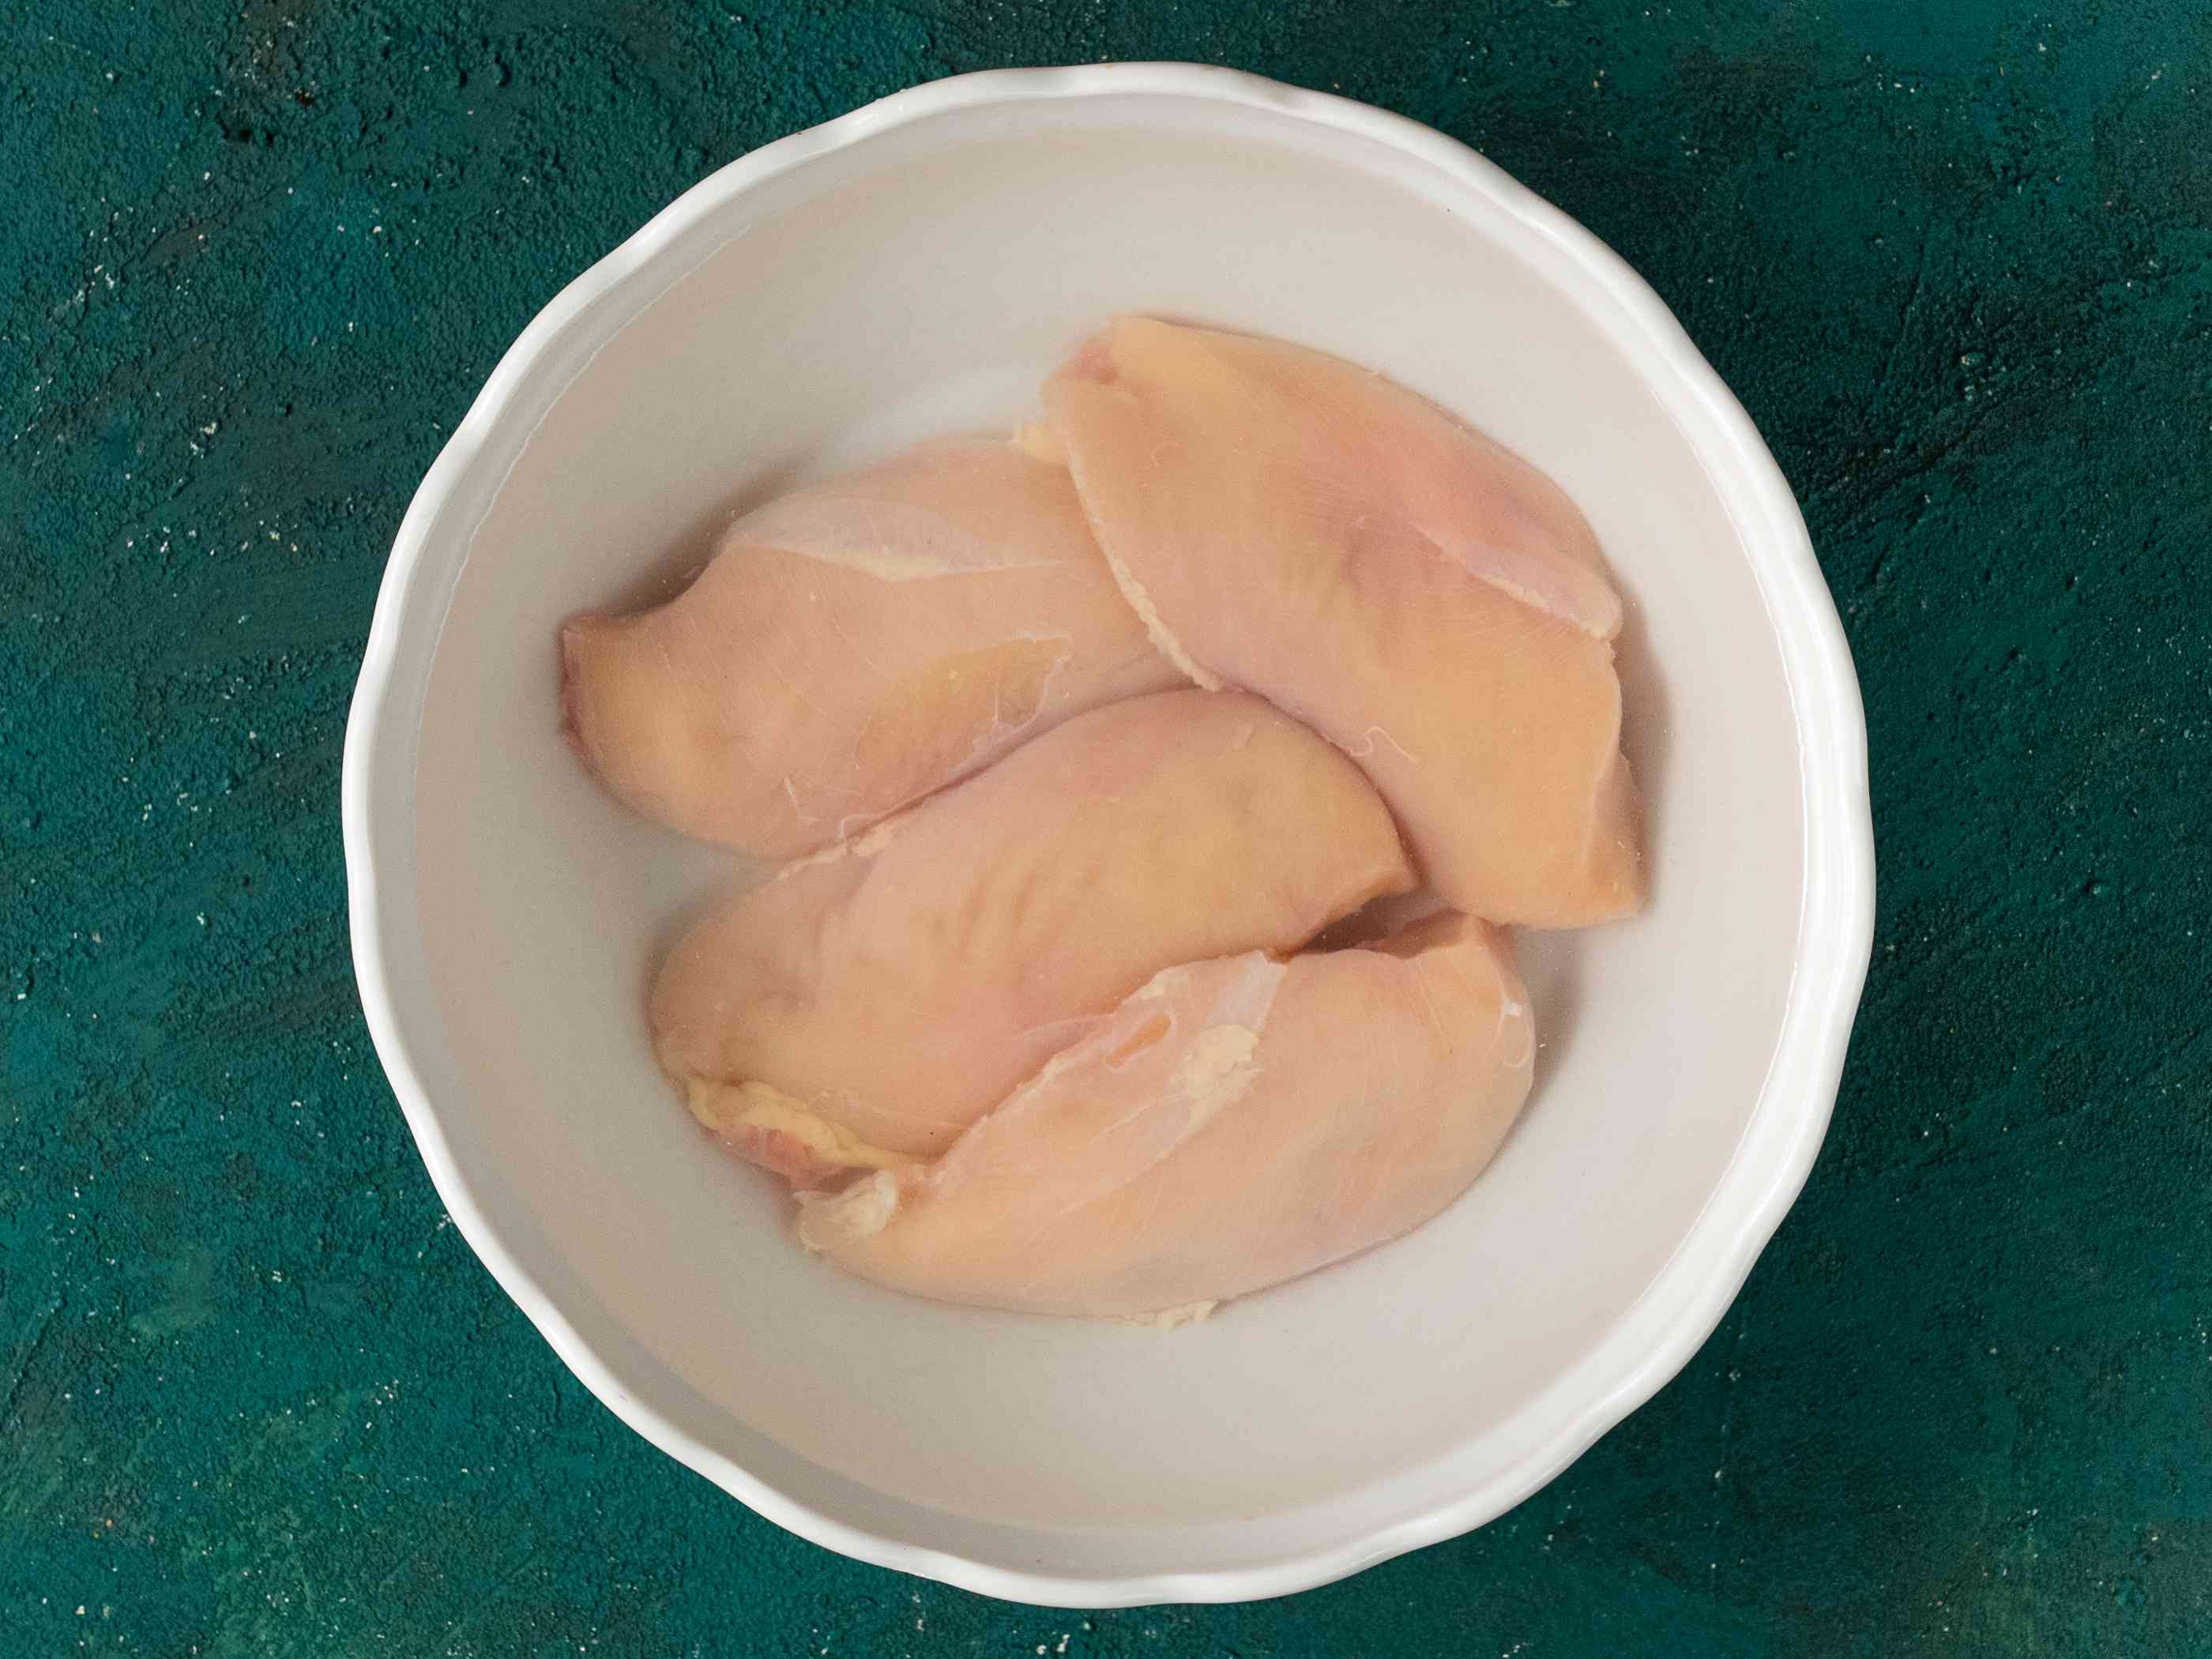 半块鸡胸肉浸在盐水里，放在一个白色陶瓷碗里，背景是蓝绿色。